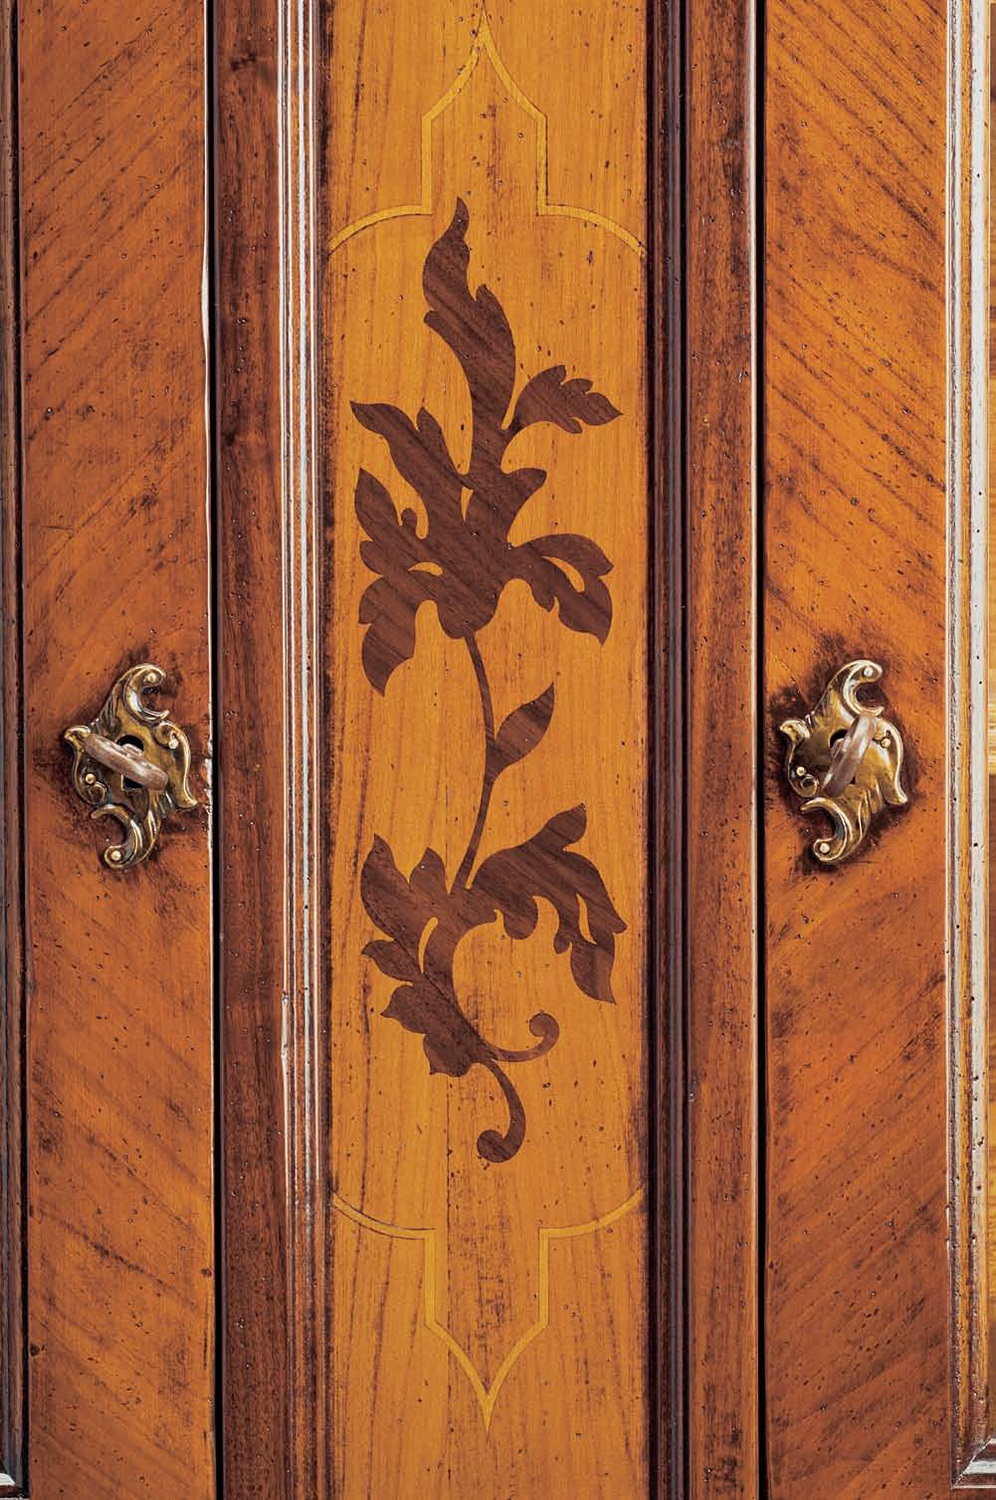 riproduzione armadio intarsiato e lastronato con legni pregiati realizzato a mano su misura in stile 1700 piemontese